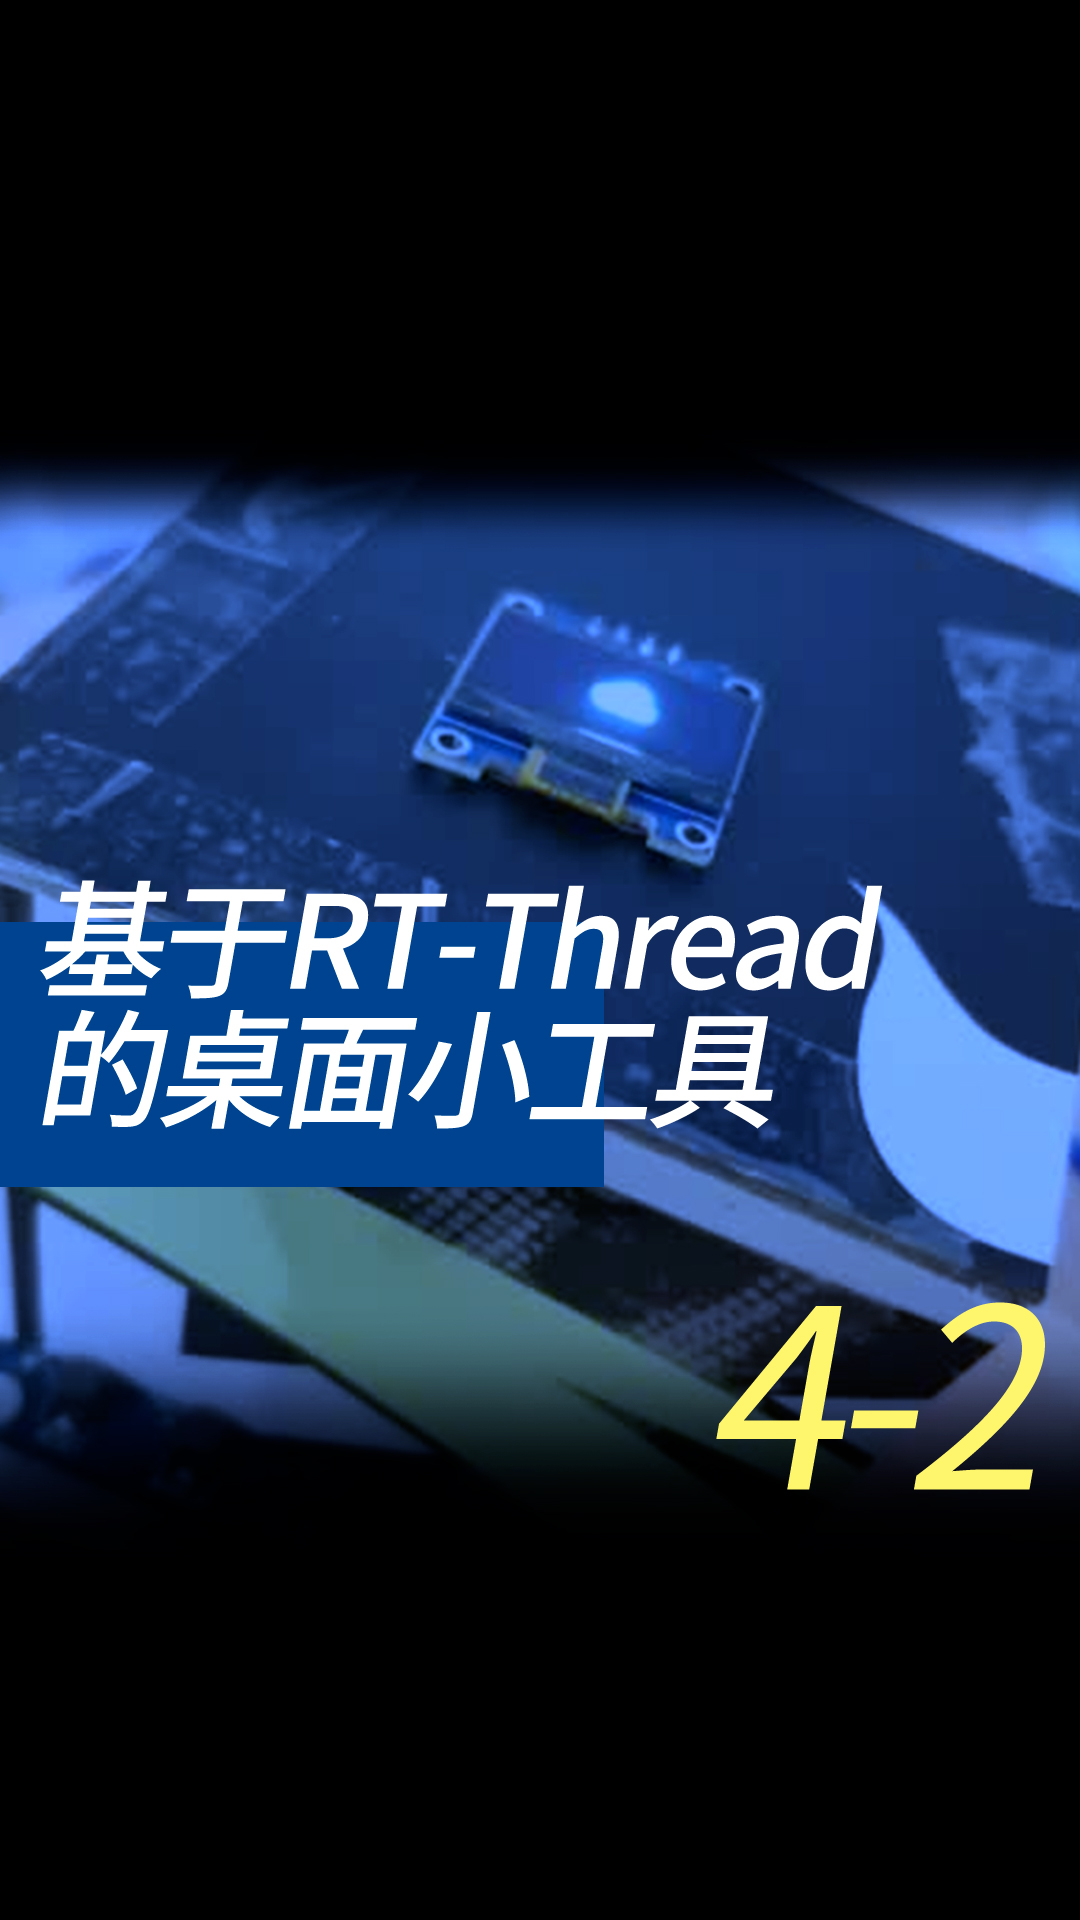 基于RT-Thread的桌面小工具 - 4-2-1git使用2